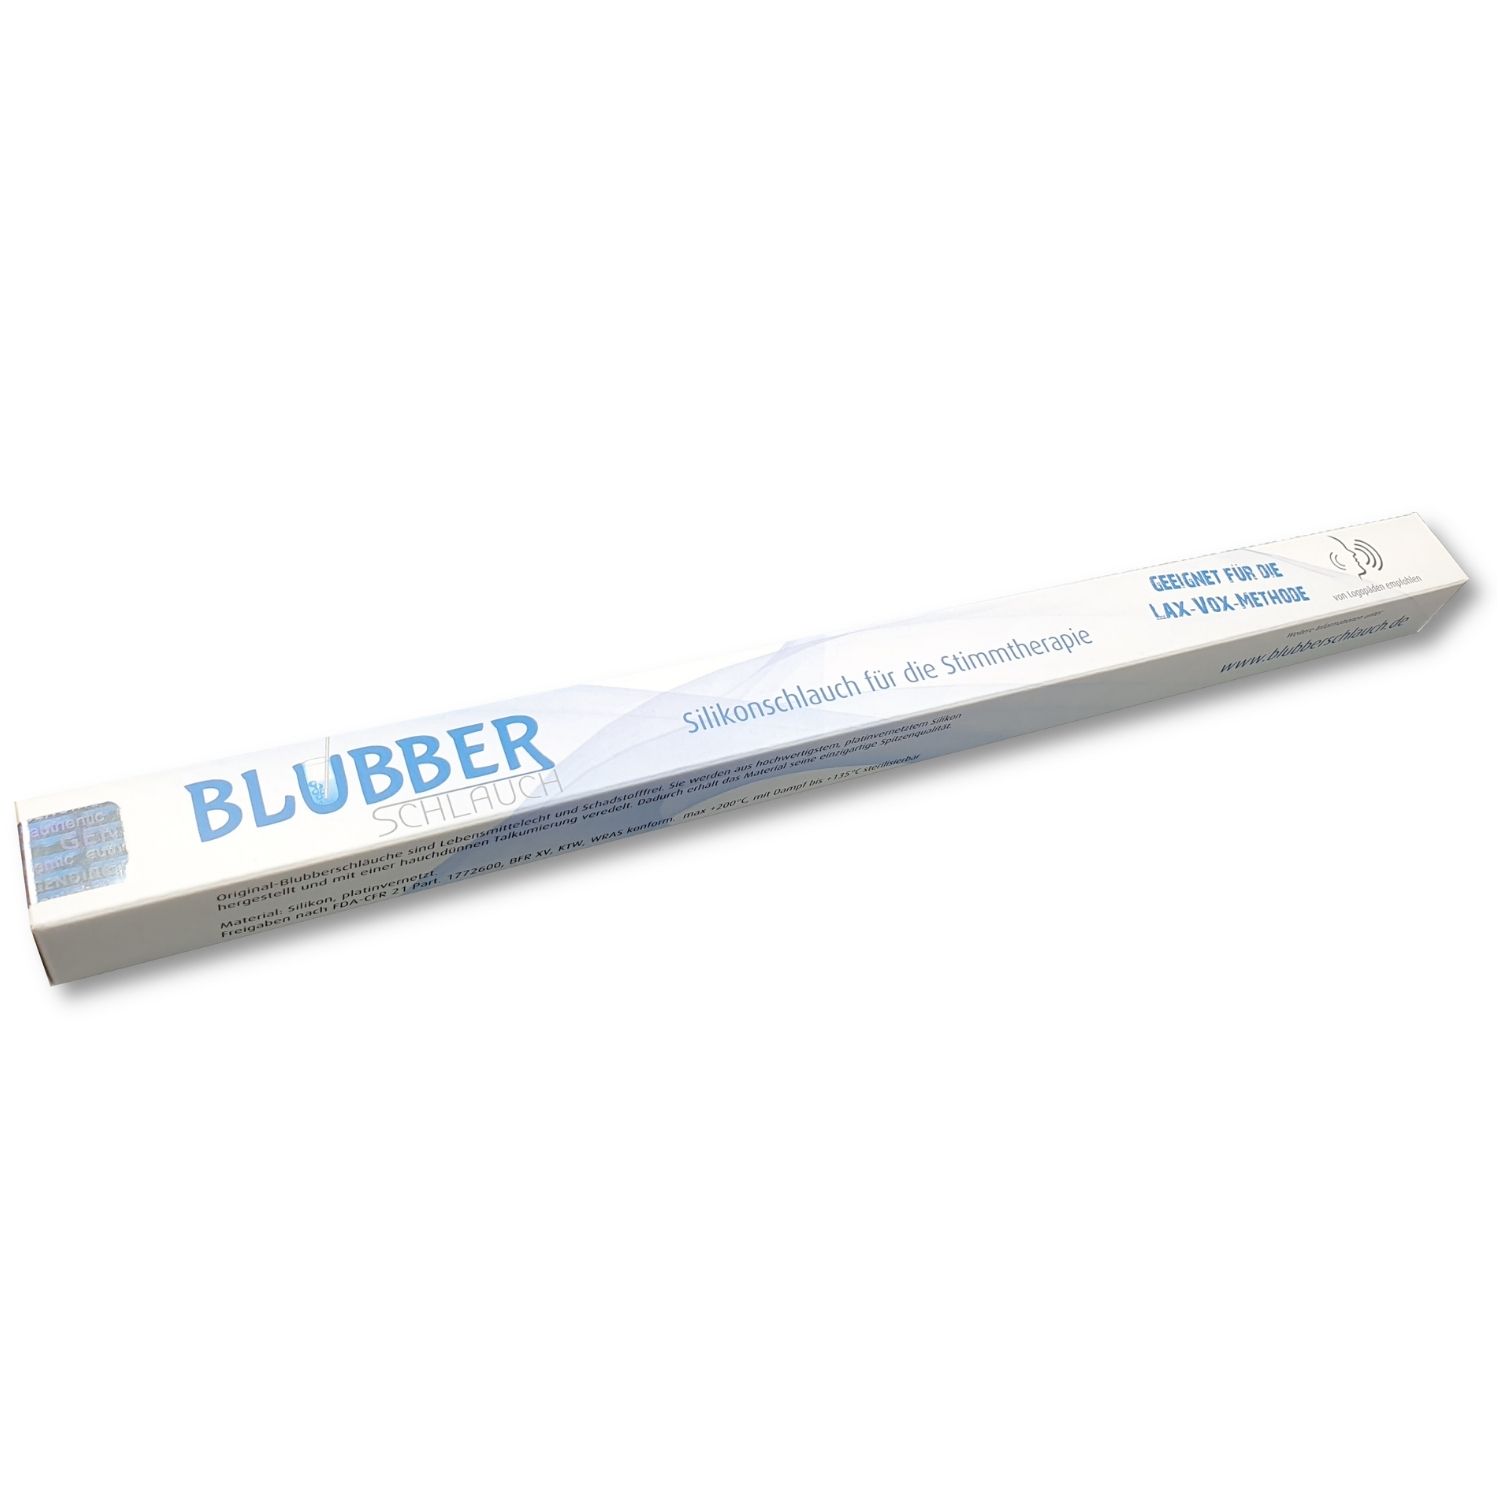 Blubberschlauch – Silikonschlauch für die Stimmtherapie